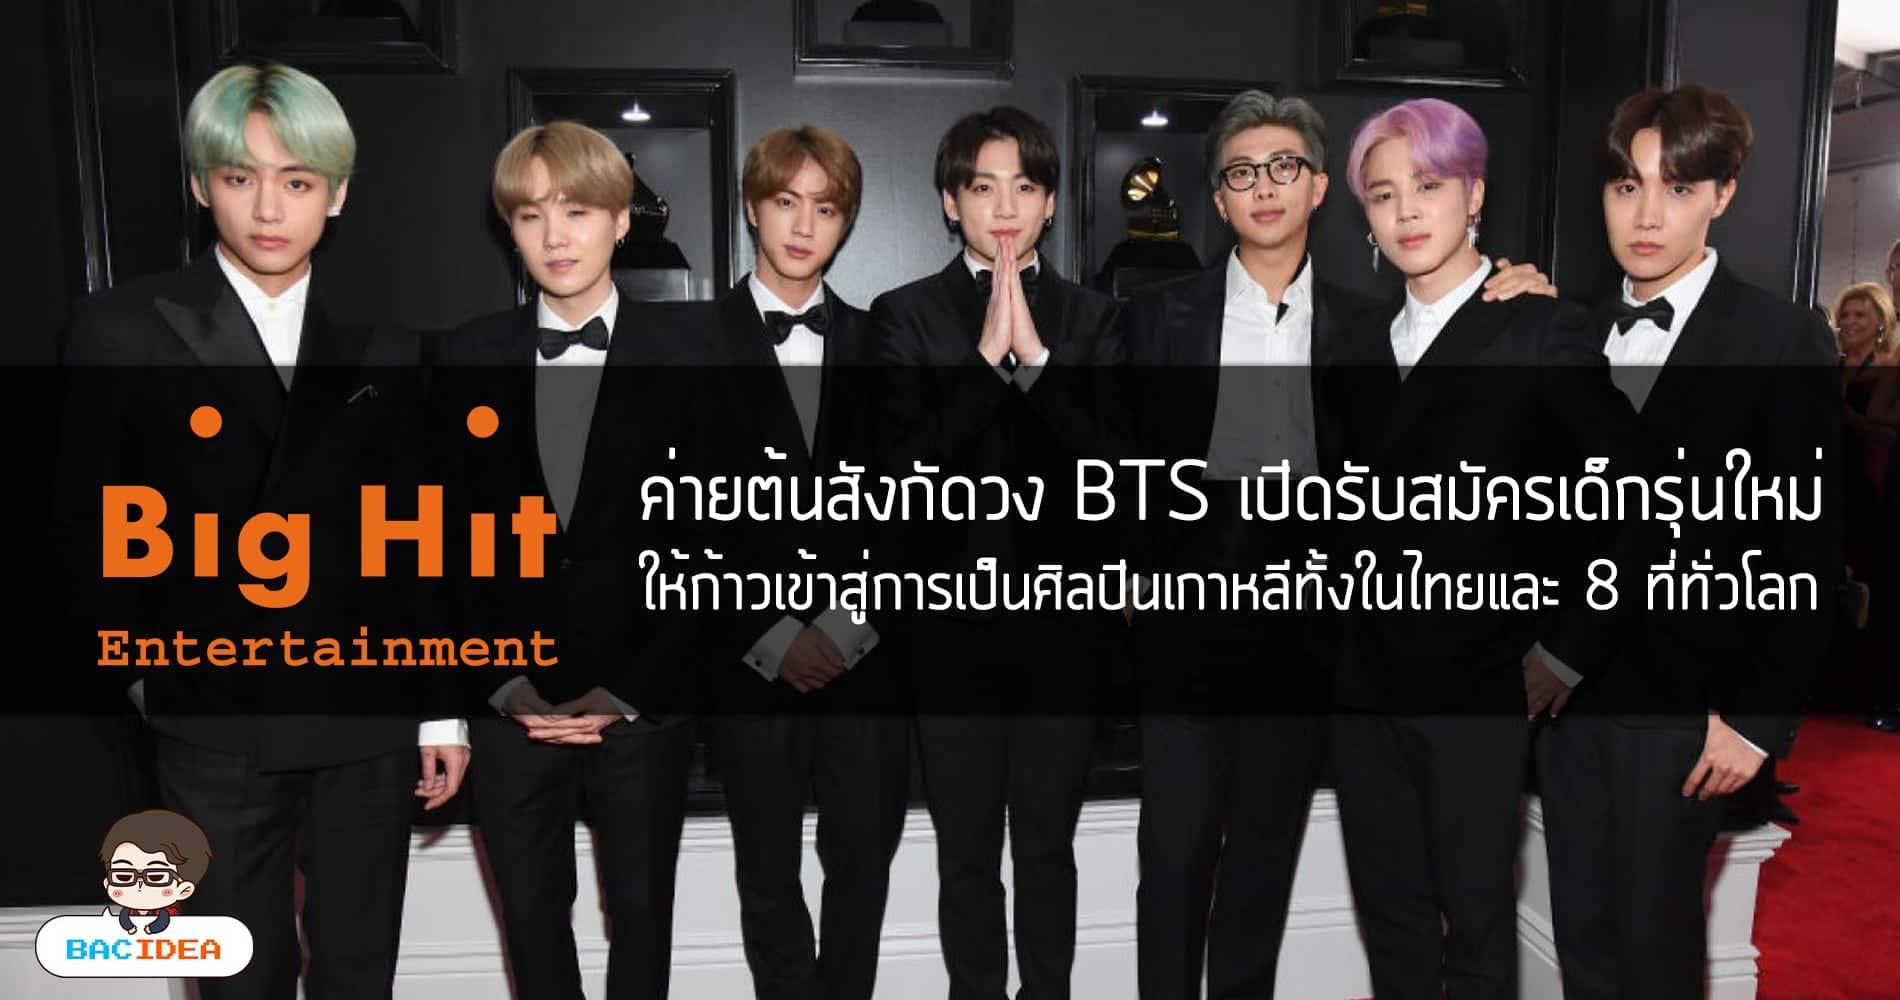 ค่ายต้นสังกัดวง BTS เปิดรับสมัครเด็กรุ่นใหม่ ให้ก้าวเข้าสู่การเป็นศิลปินเกาหลีทั้งในไทยและ 8 ที่ทั่วโลก 1